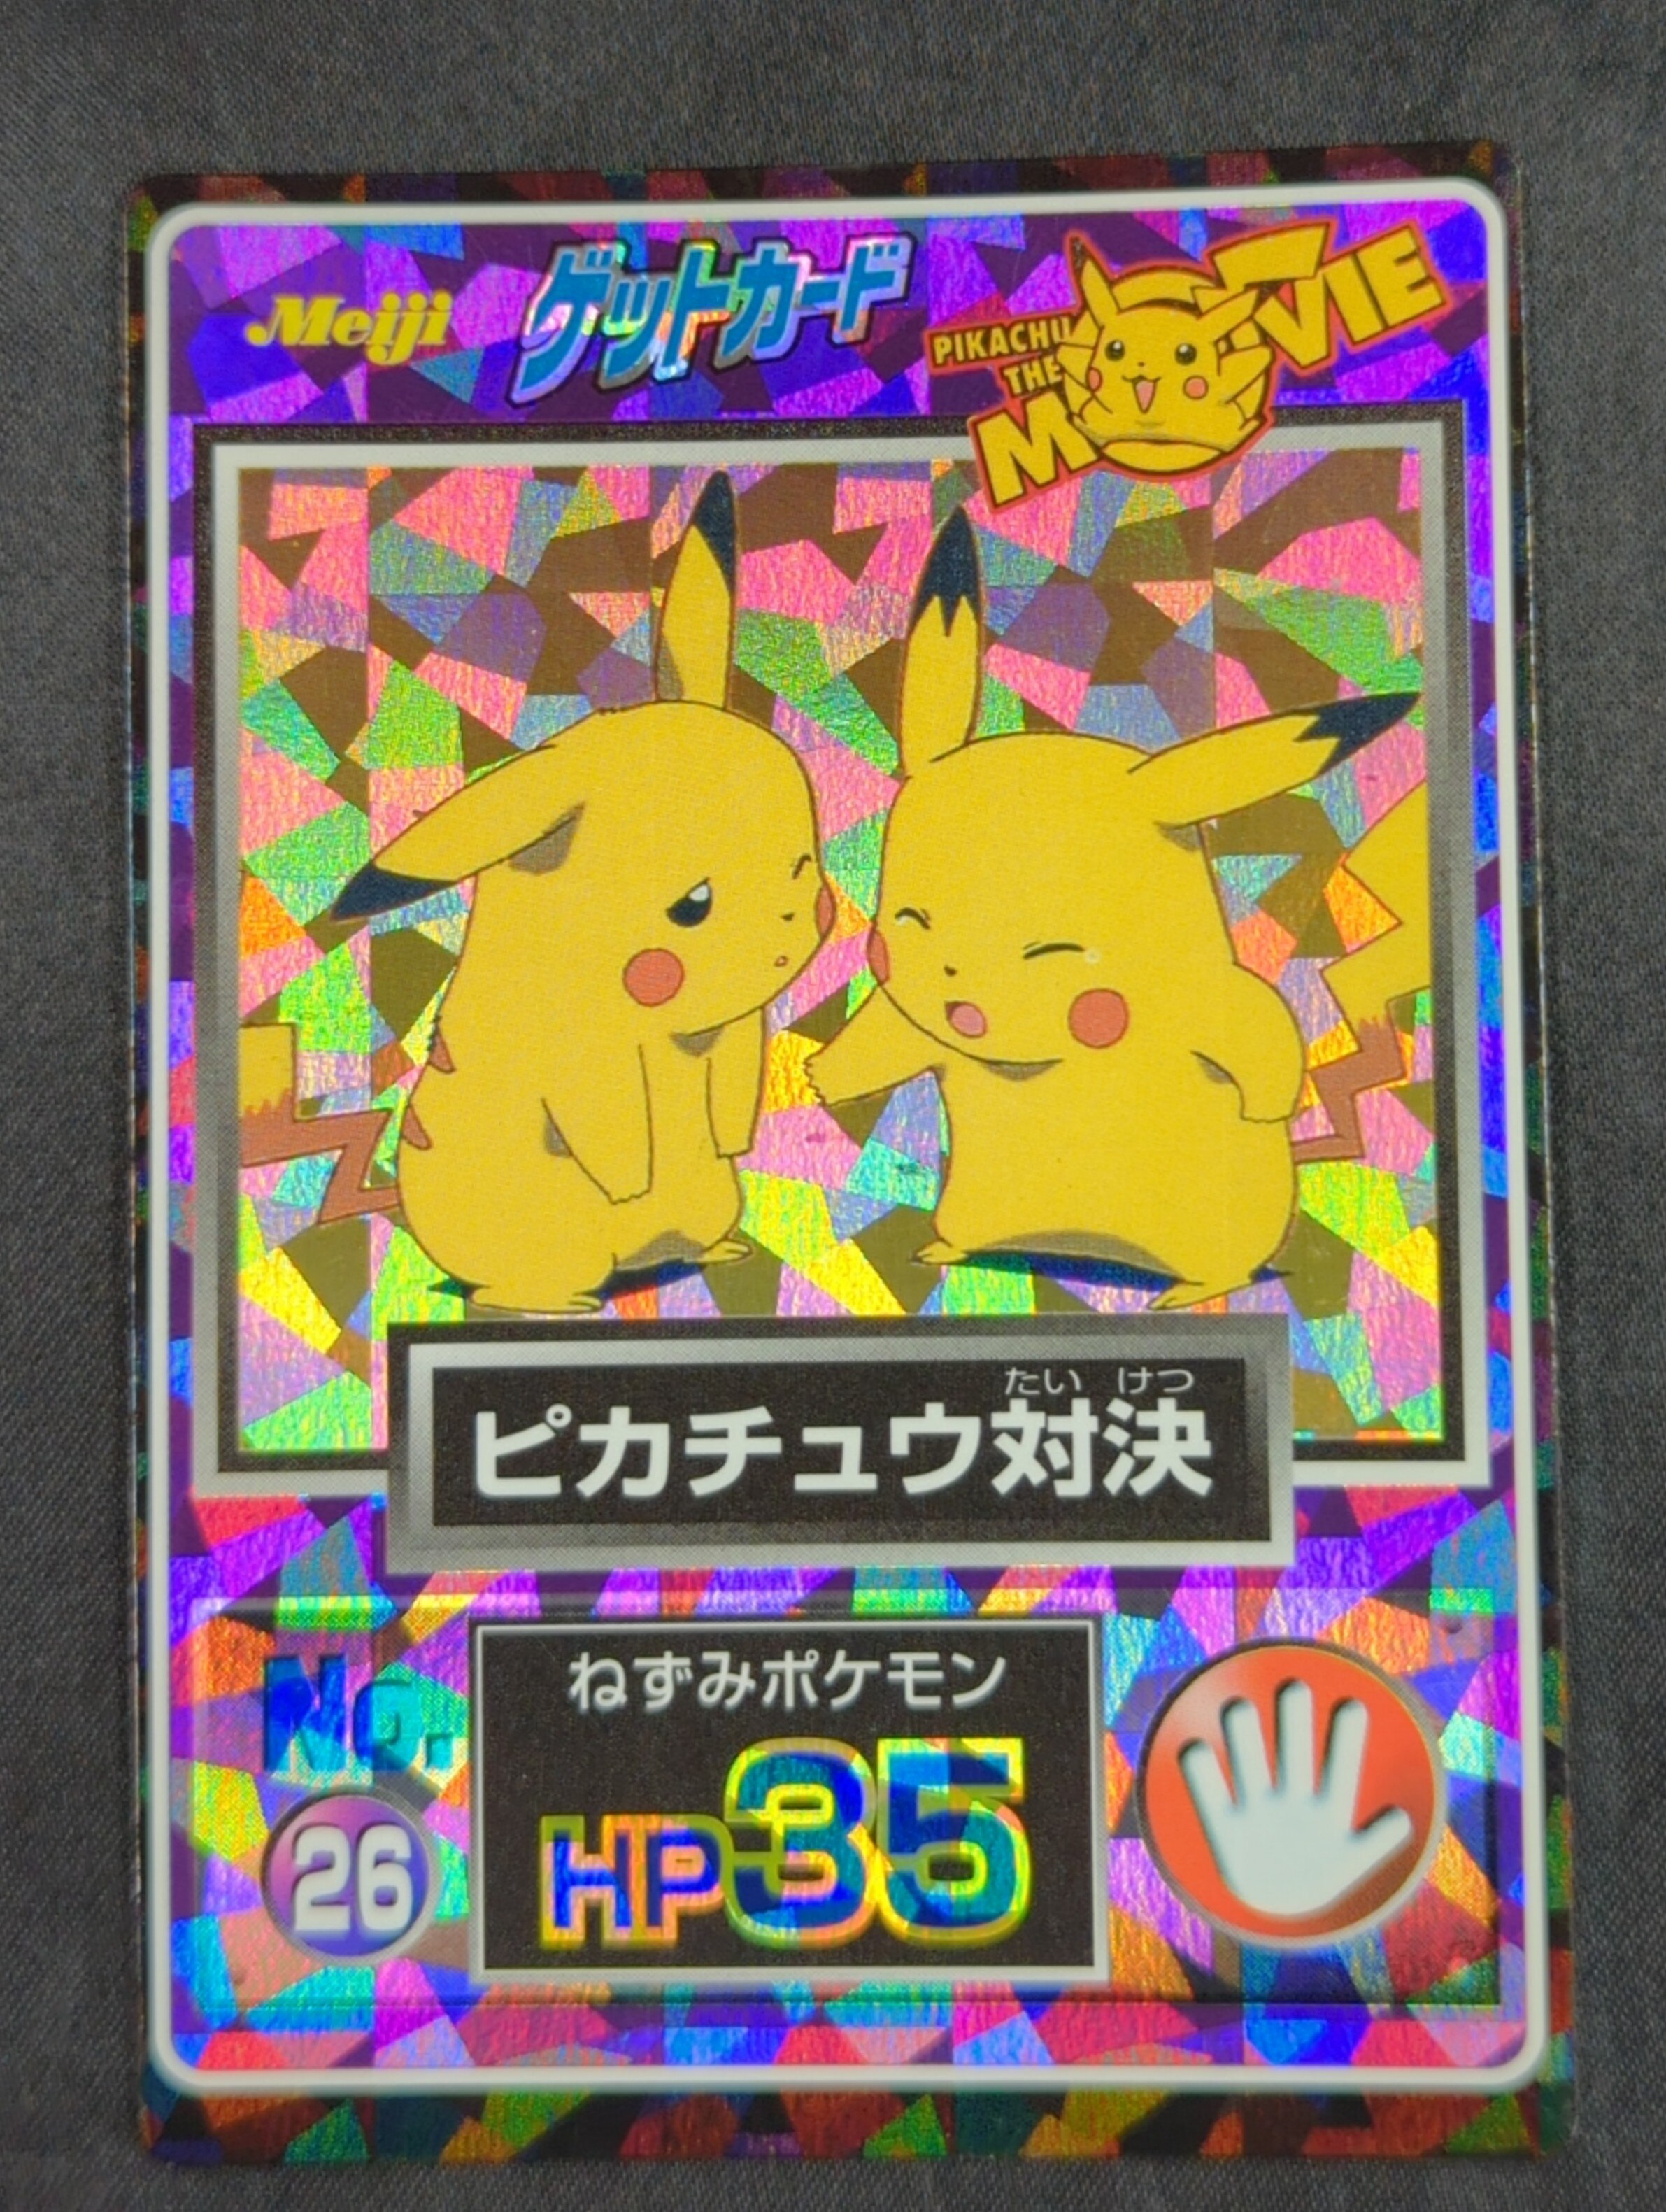 最新デザインの 激レア☆明治ポケットモンスターゲットカードシリーズ